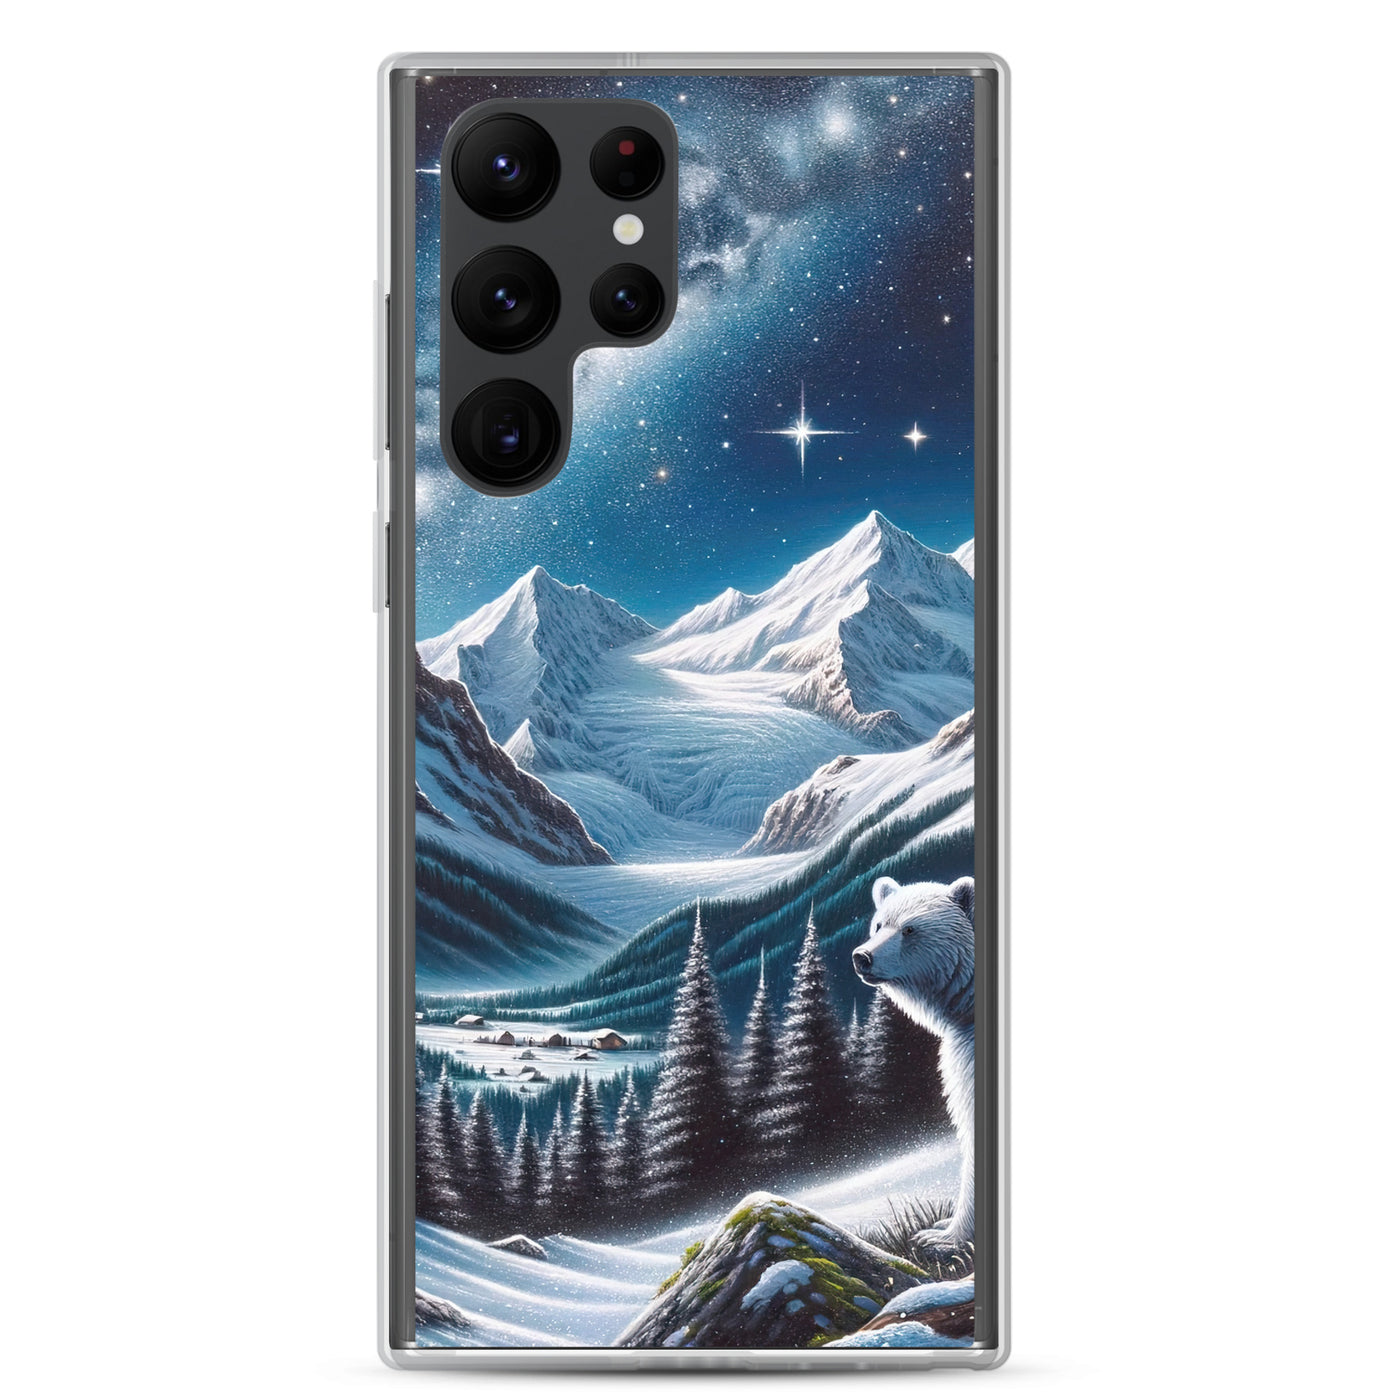 Sternennacht und Eisbär: Acrylgemälde mit Milchstraße, Alpen und schneebedeckte Gipfel - Samsung Schutzhülle (durchsichtig) camping xxx yyy zzz Samsung Galaxy S22 Ultra